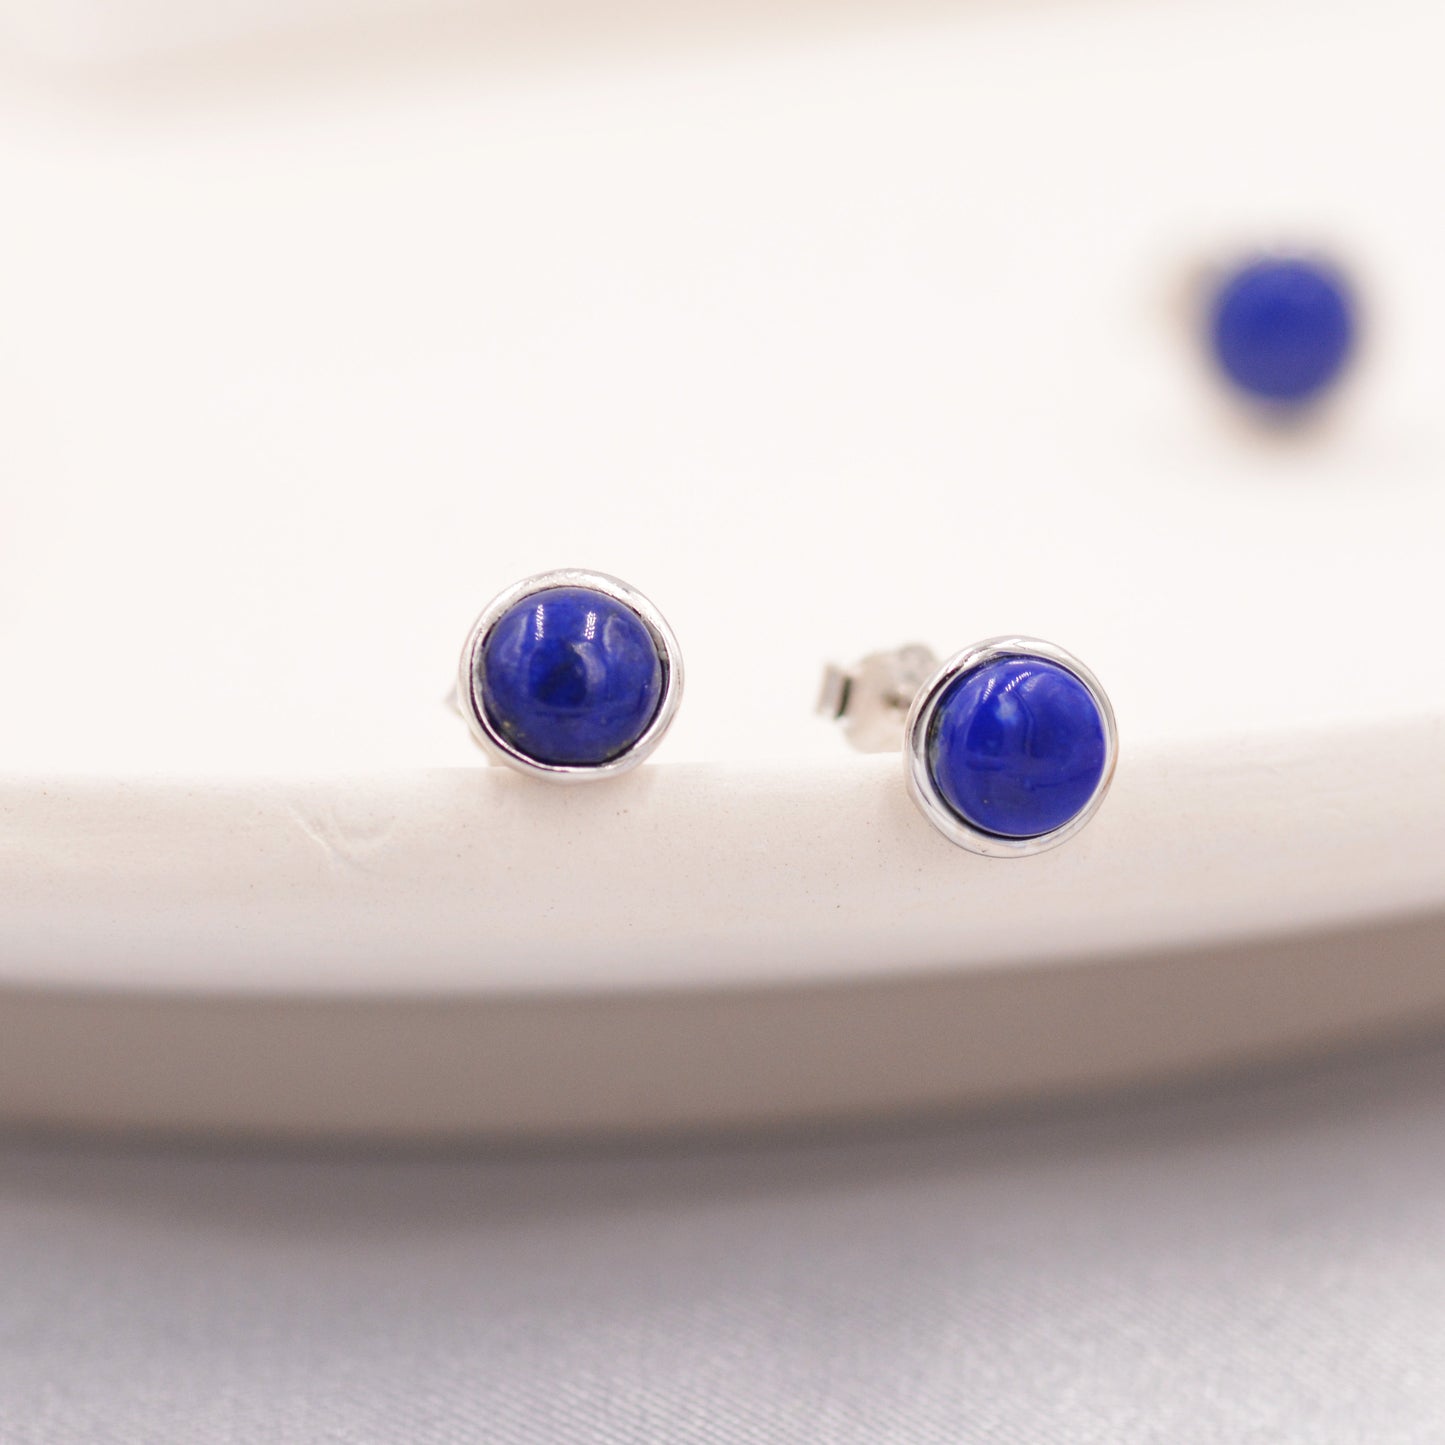 Natural Lapis Lazuli Stud Earrings in Sterling Silver - Genuine Blue Lapis Lazuli Crystal Stud Earrings  - Semi Precious Gemstone